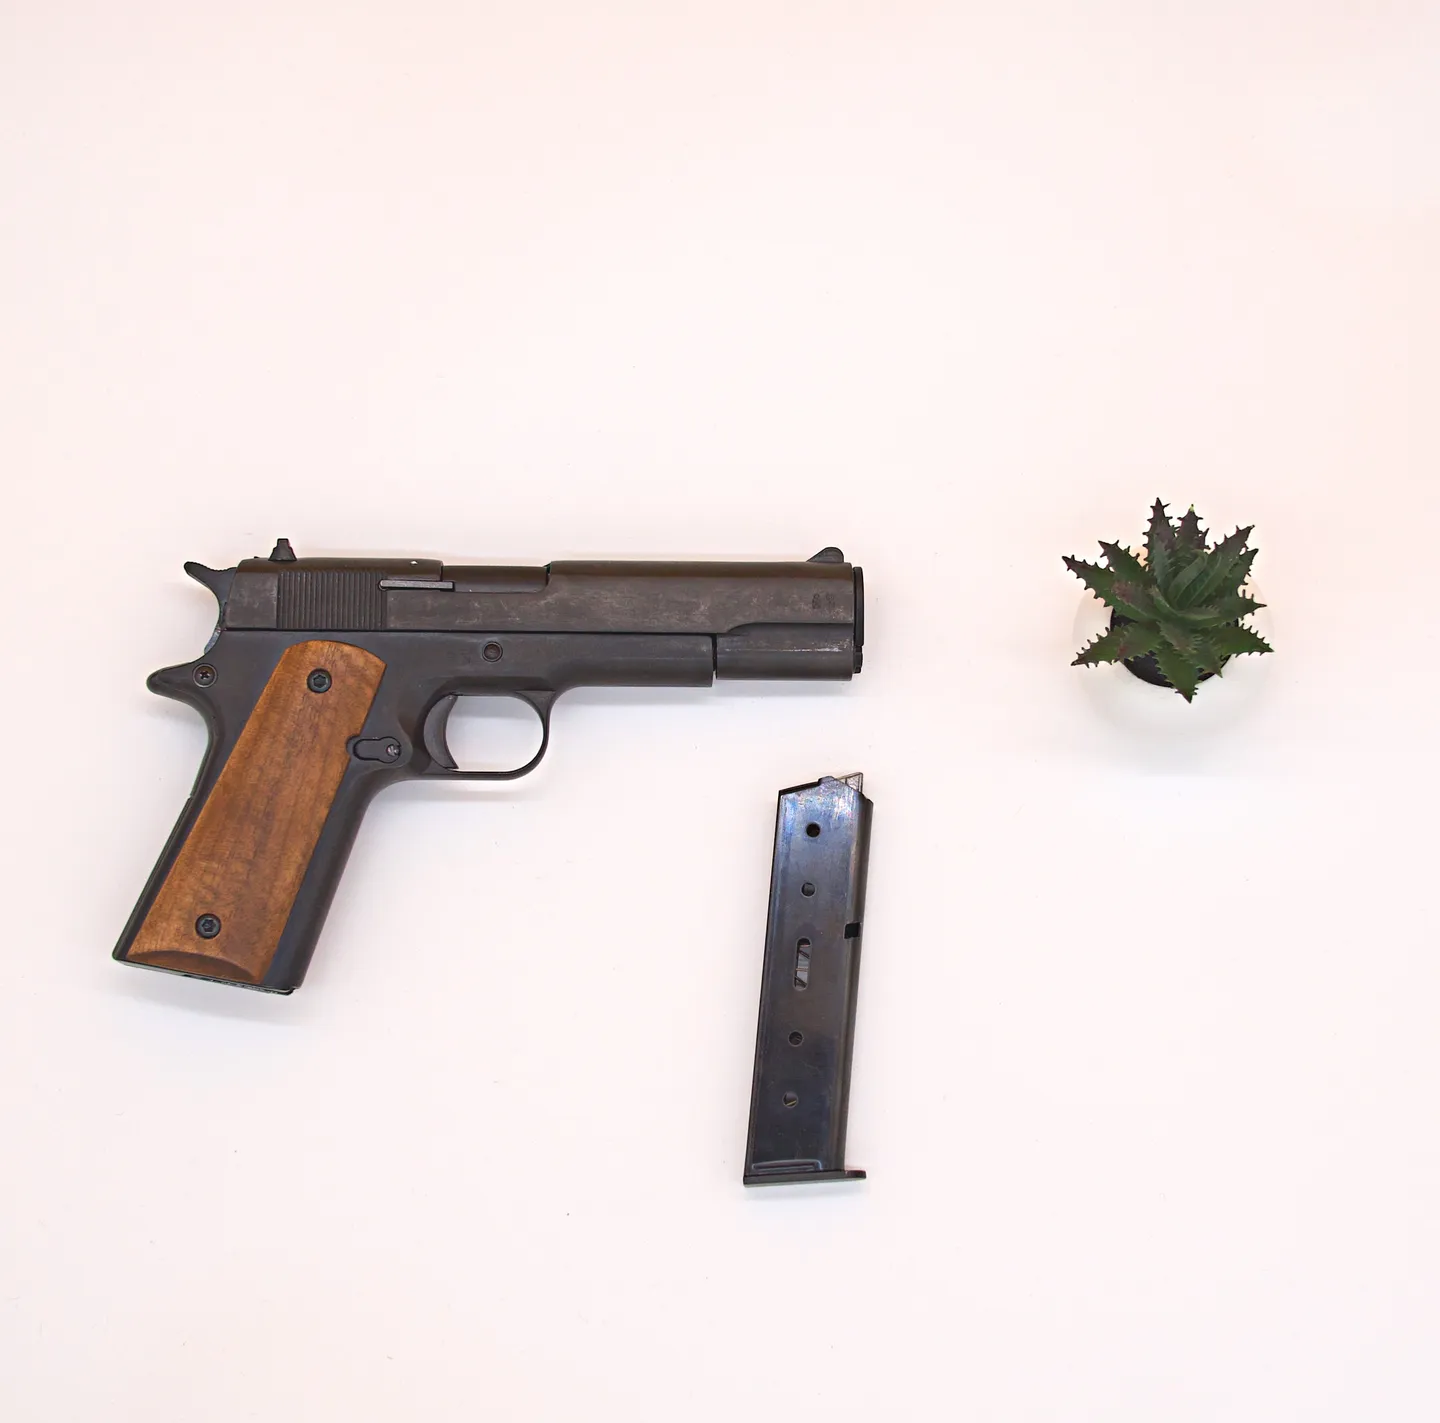 Signal-und Selbstverteidigungspistole - Alarm- und Verteidigungspistole Kimar 911 9mm PAK – im Stil von Colt 1911